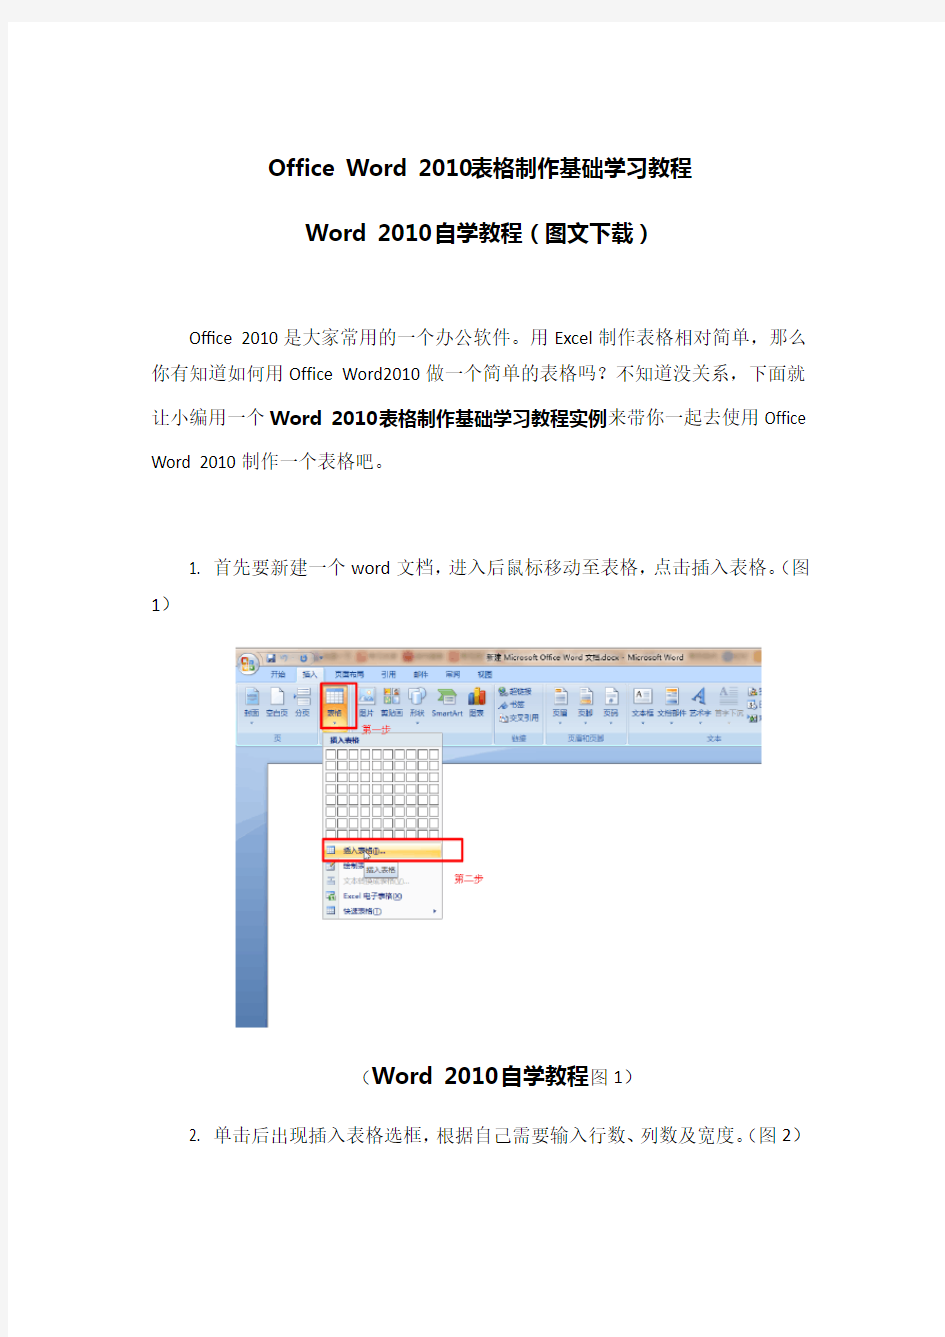 Office-Word-2010表格制作基础学习教程-Office-Word-2010自学教程(图文下载)